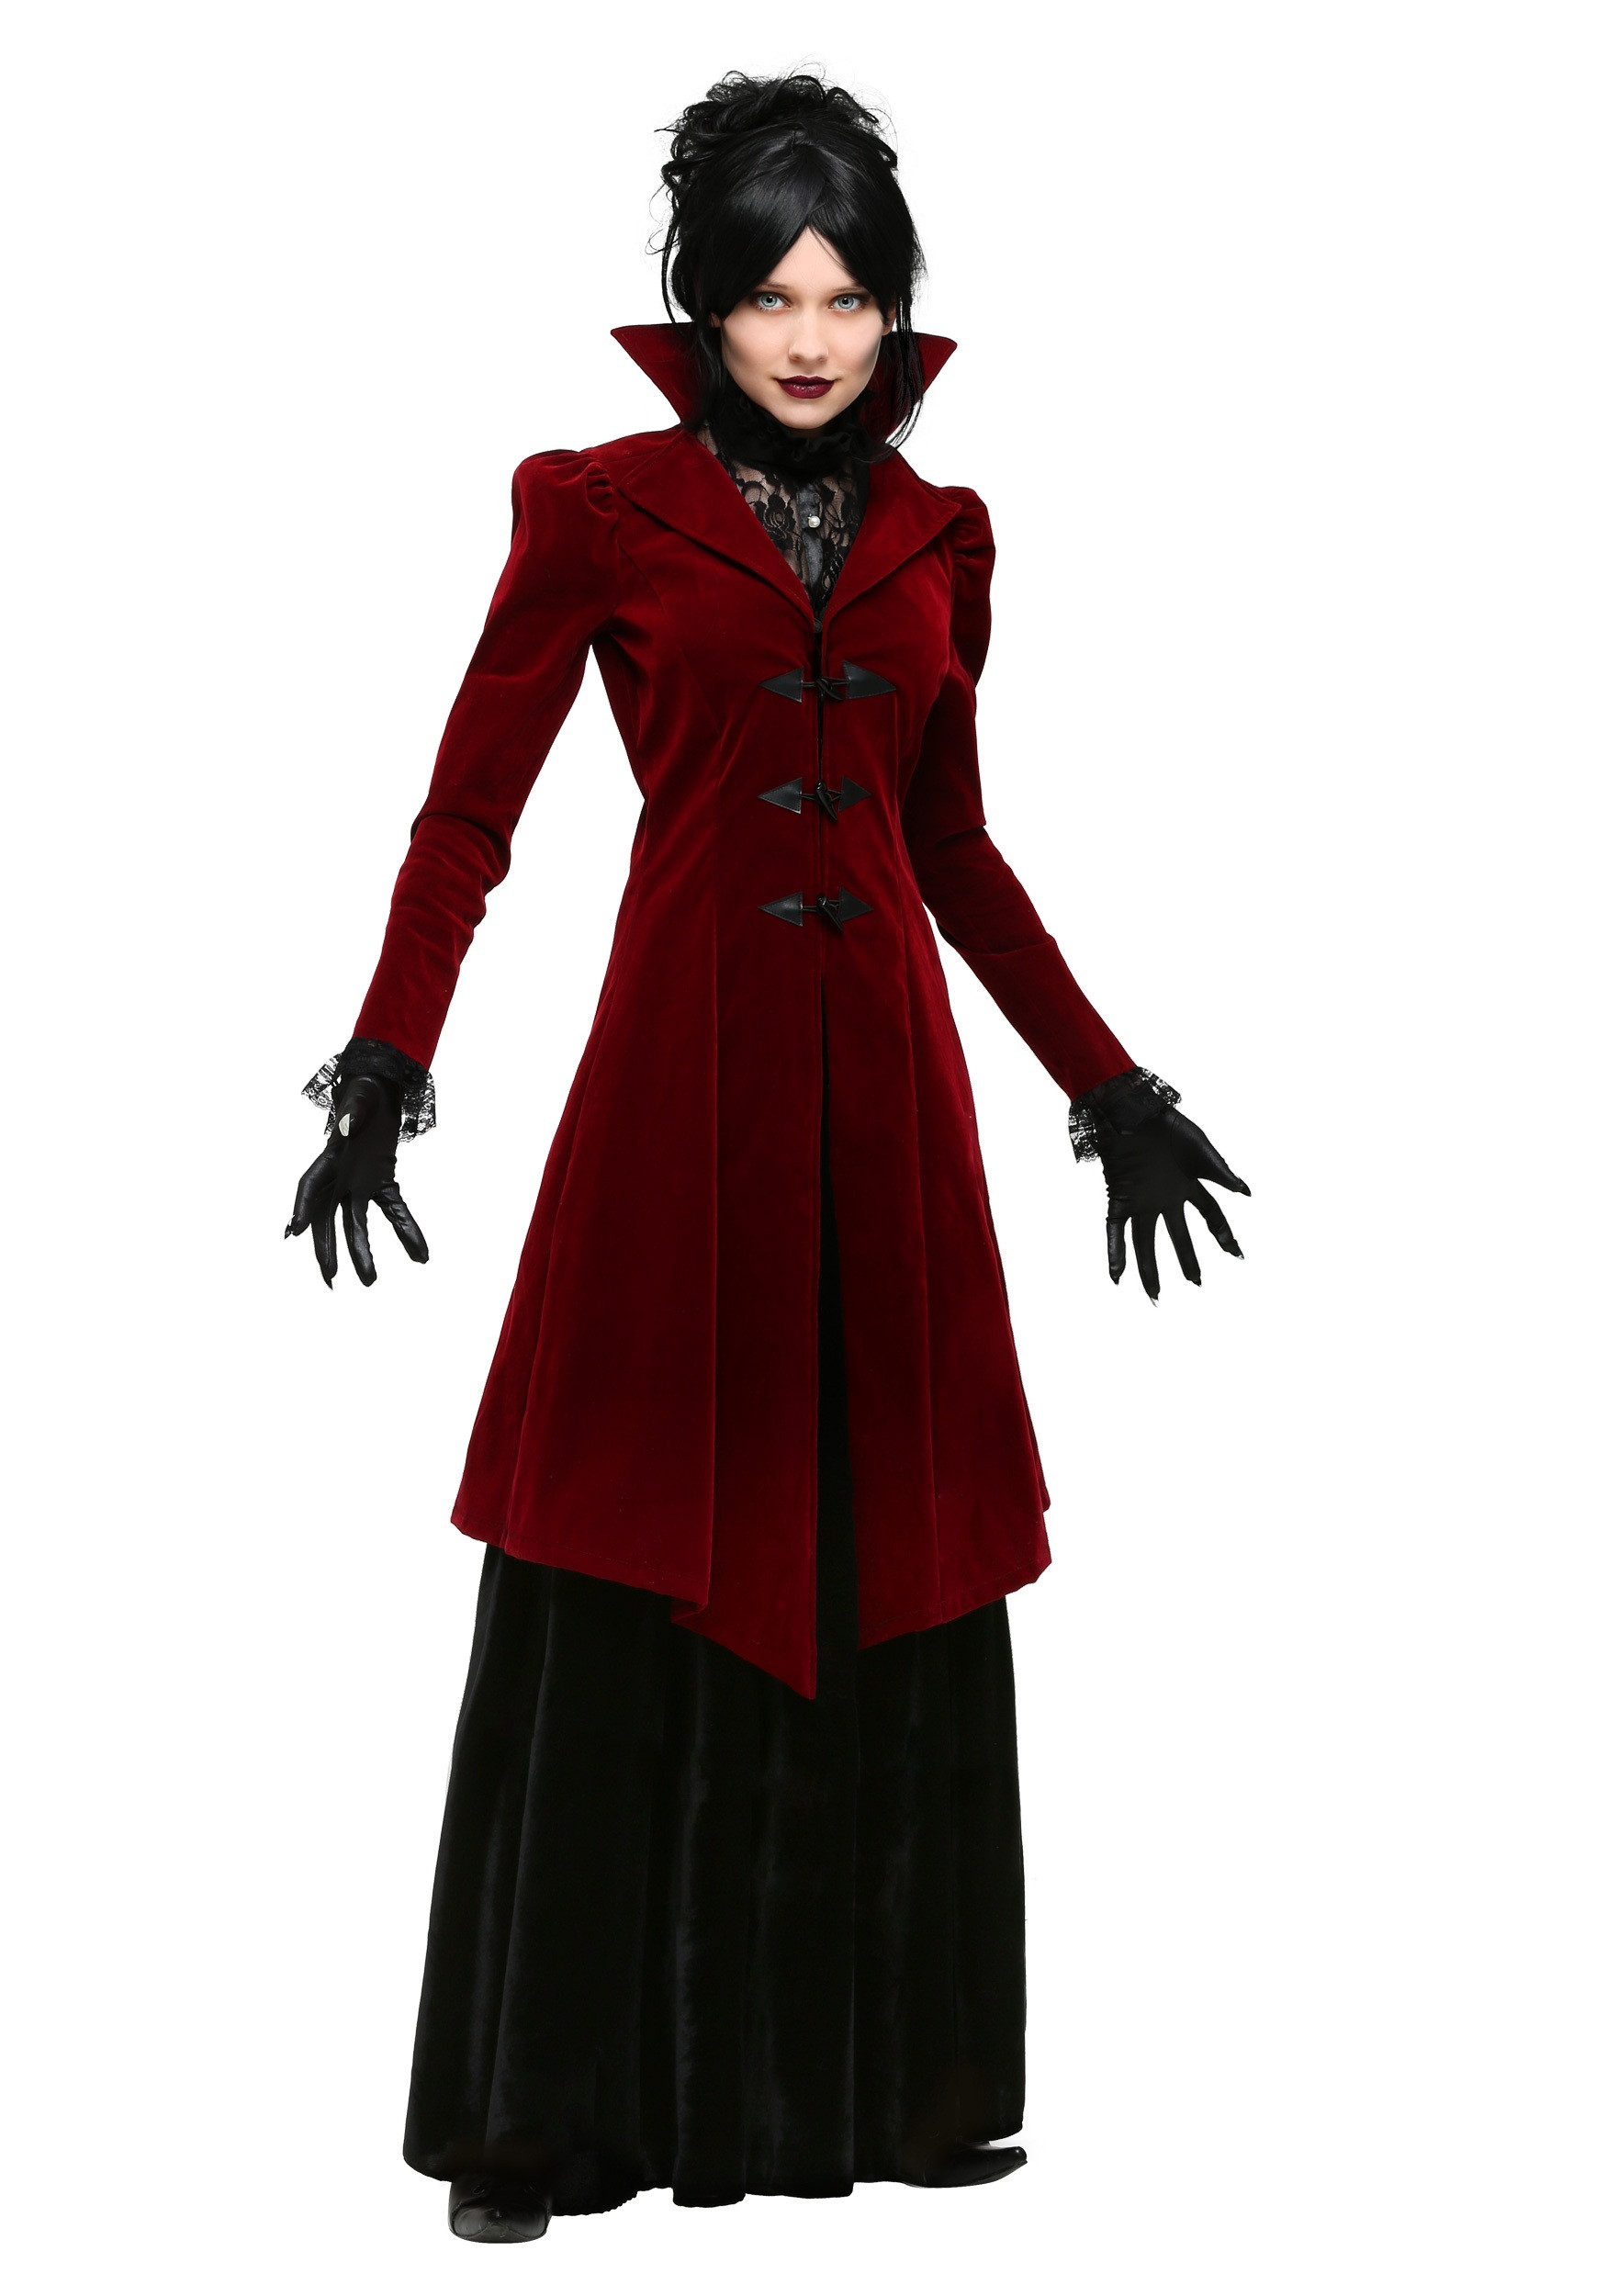 Halloween Costume For Women Ideas
 Delightfully Dreadful Vampiress Costume for Women